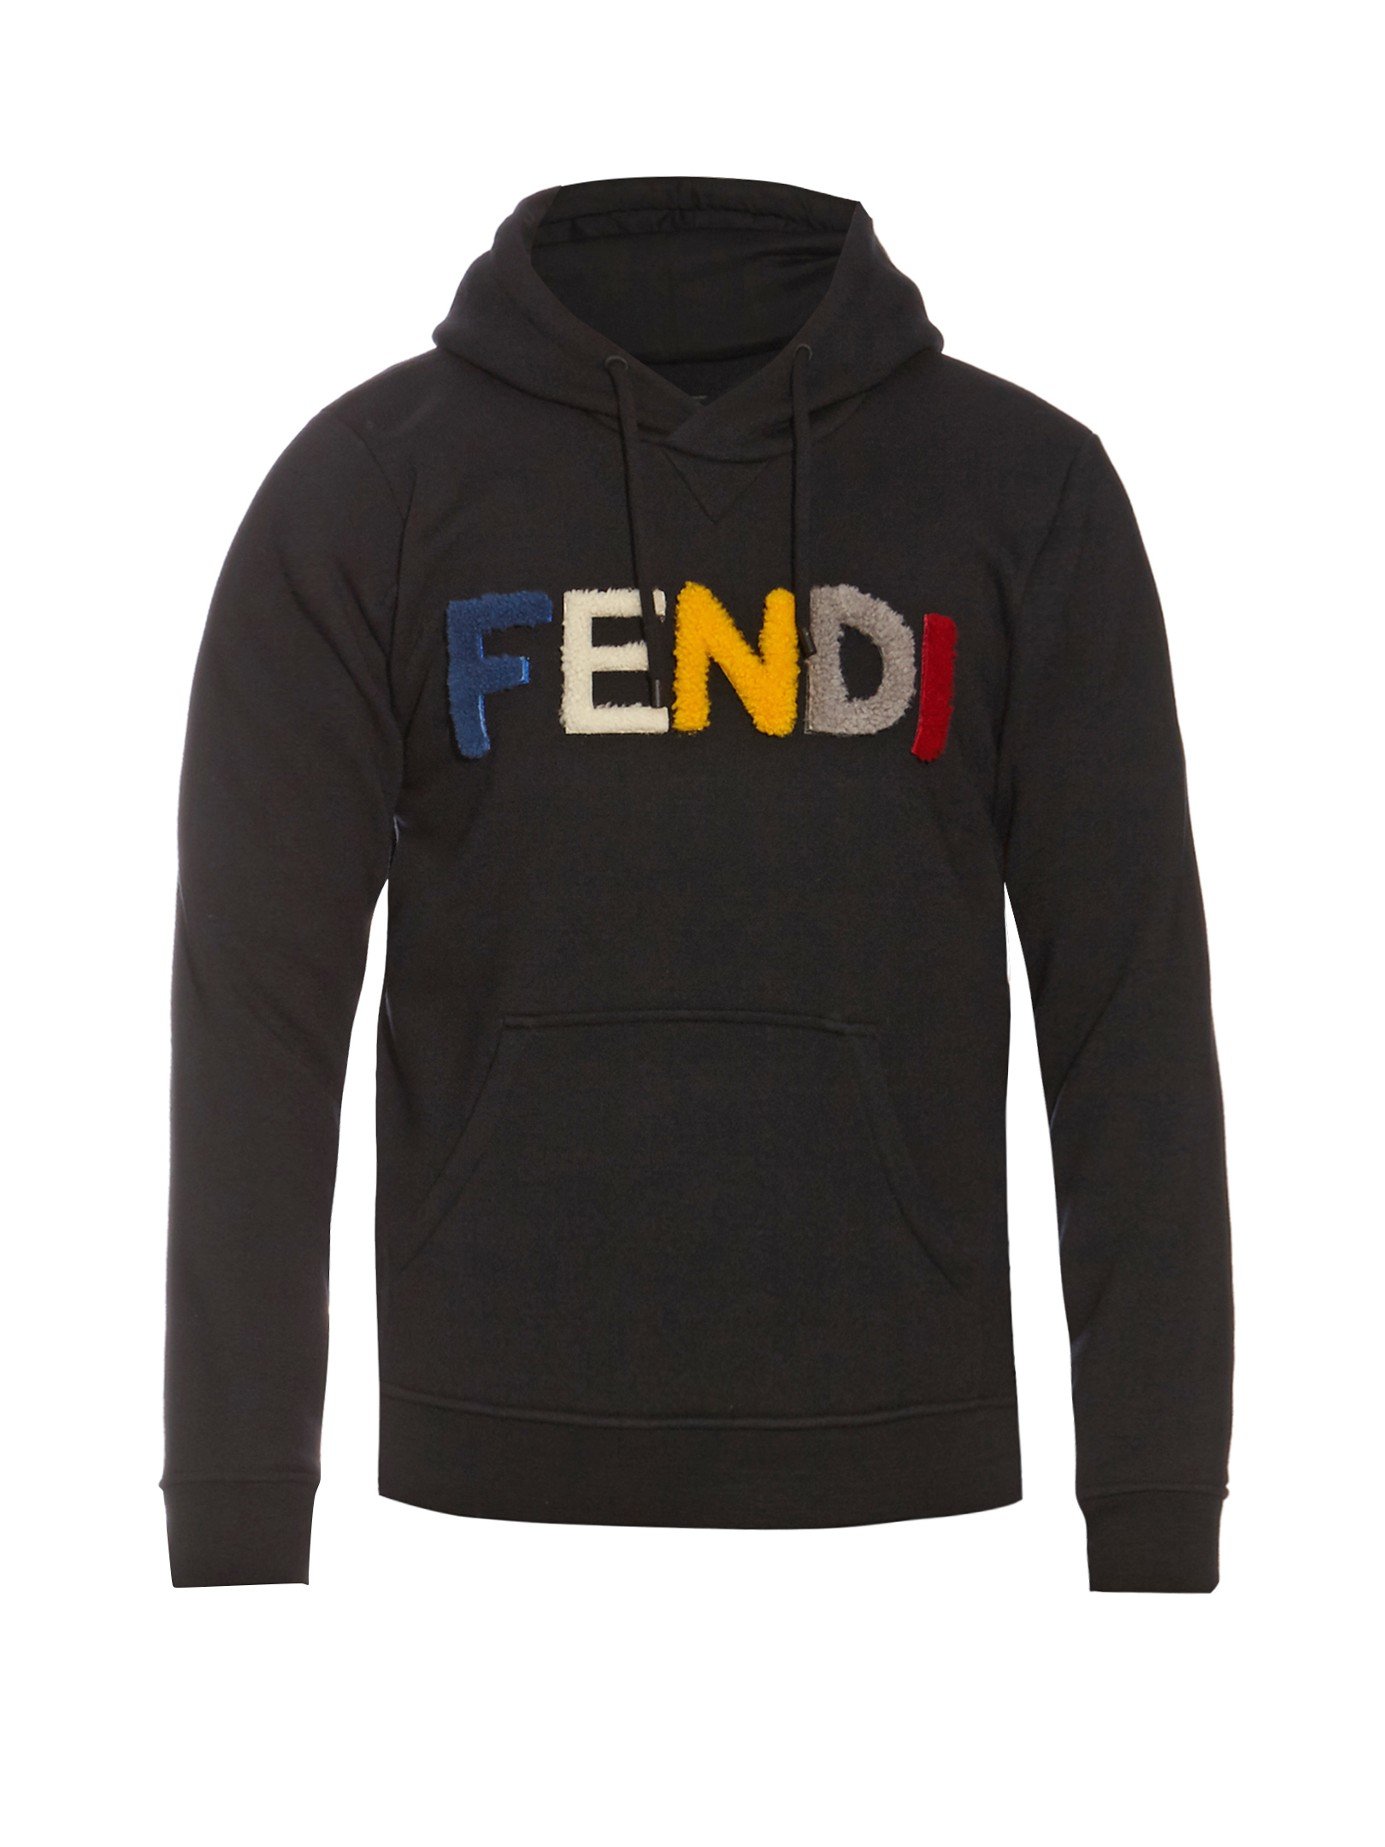 Lyst - Fendi Detachable-logo Hooded Sweatshirt in Black for Men